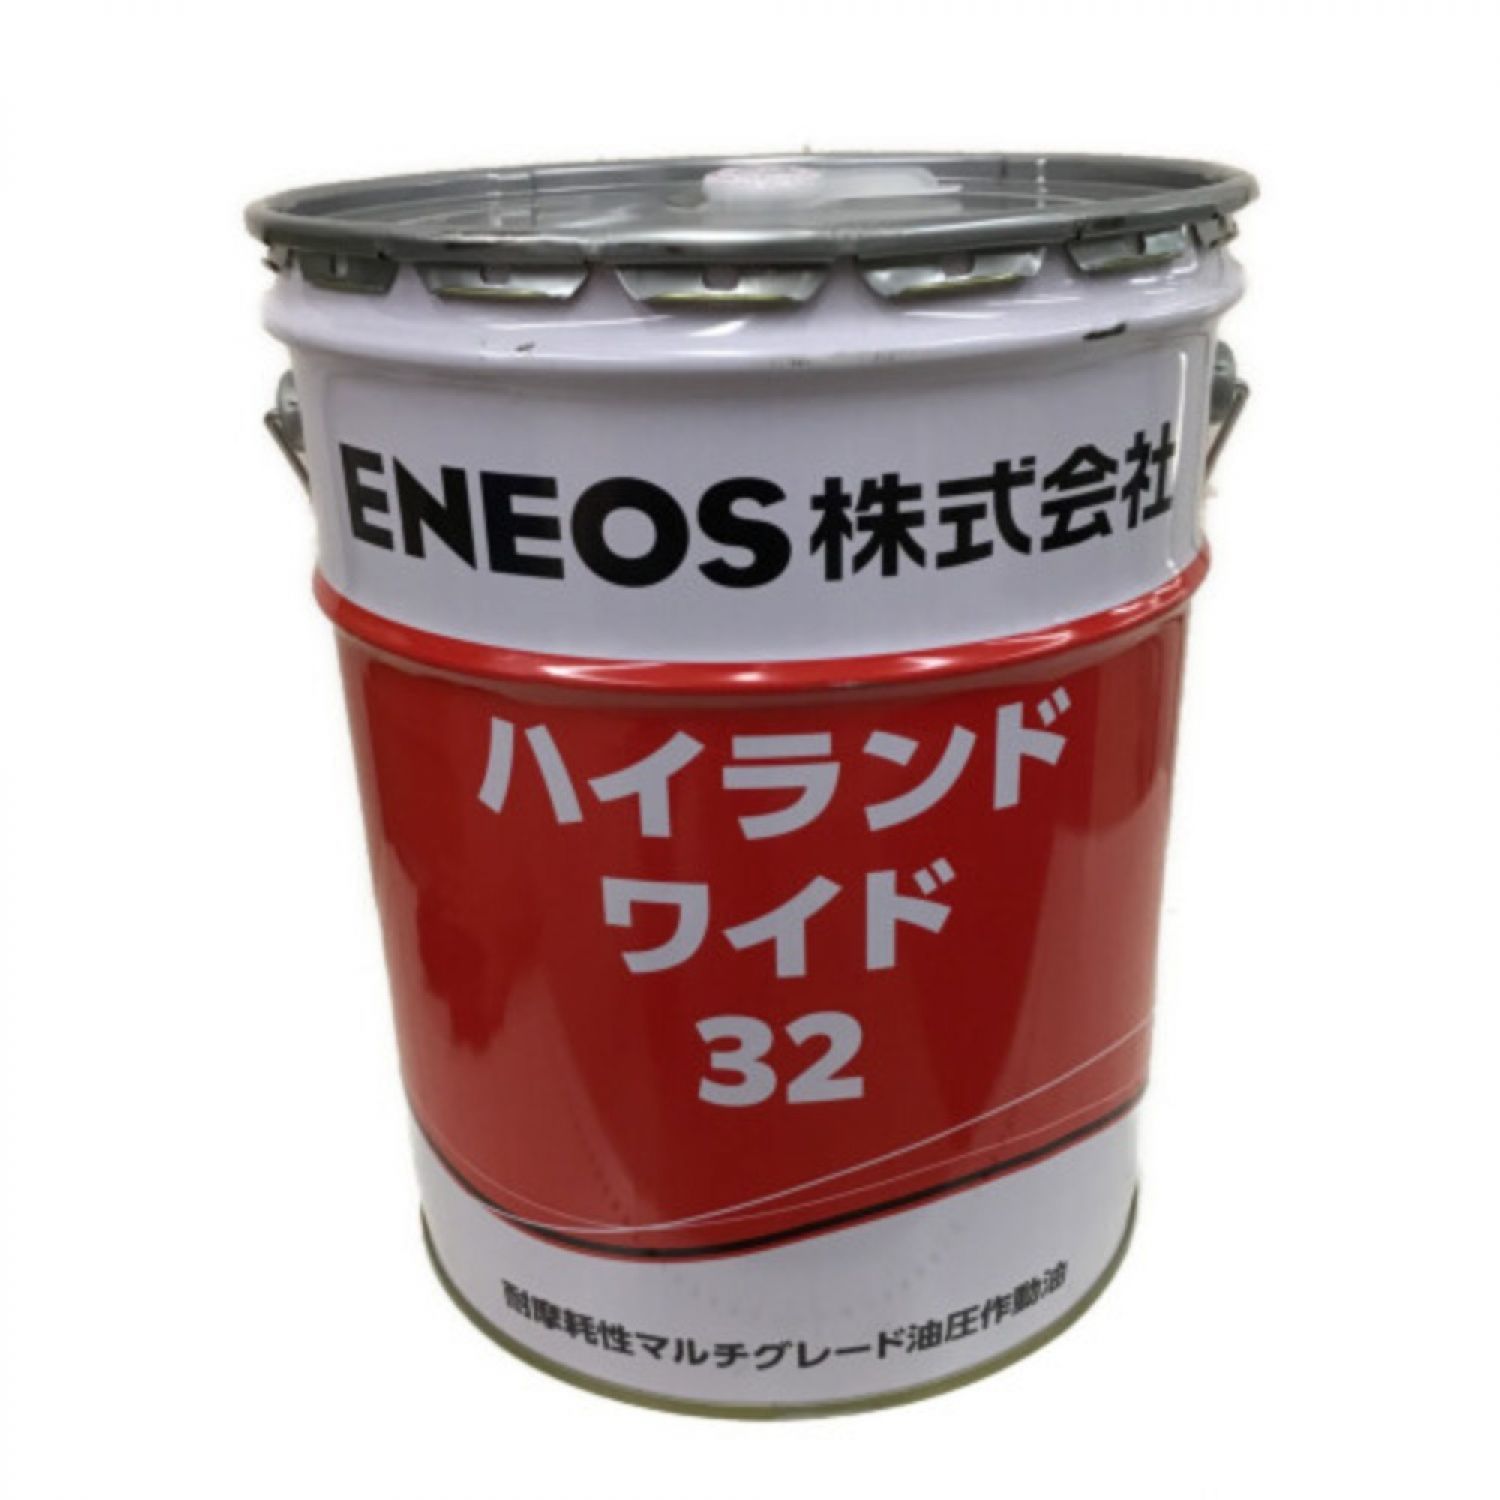 ENEOS エネオス スーパーハイランド VG22 高級耐摩耗性油圧作動油 20Lペール缶 通販